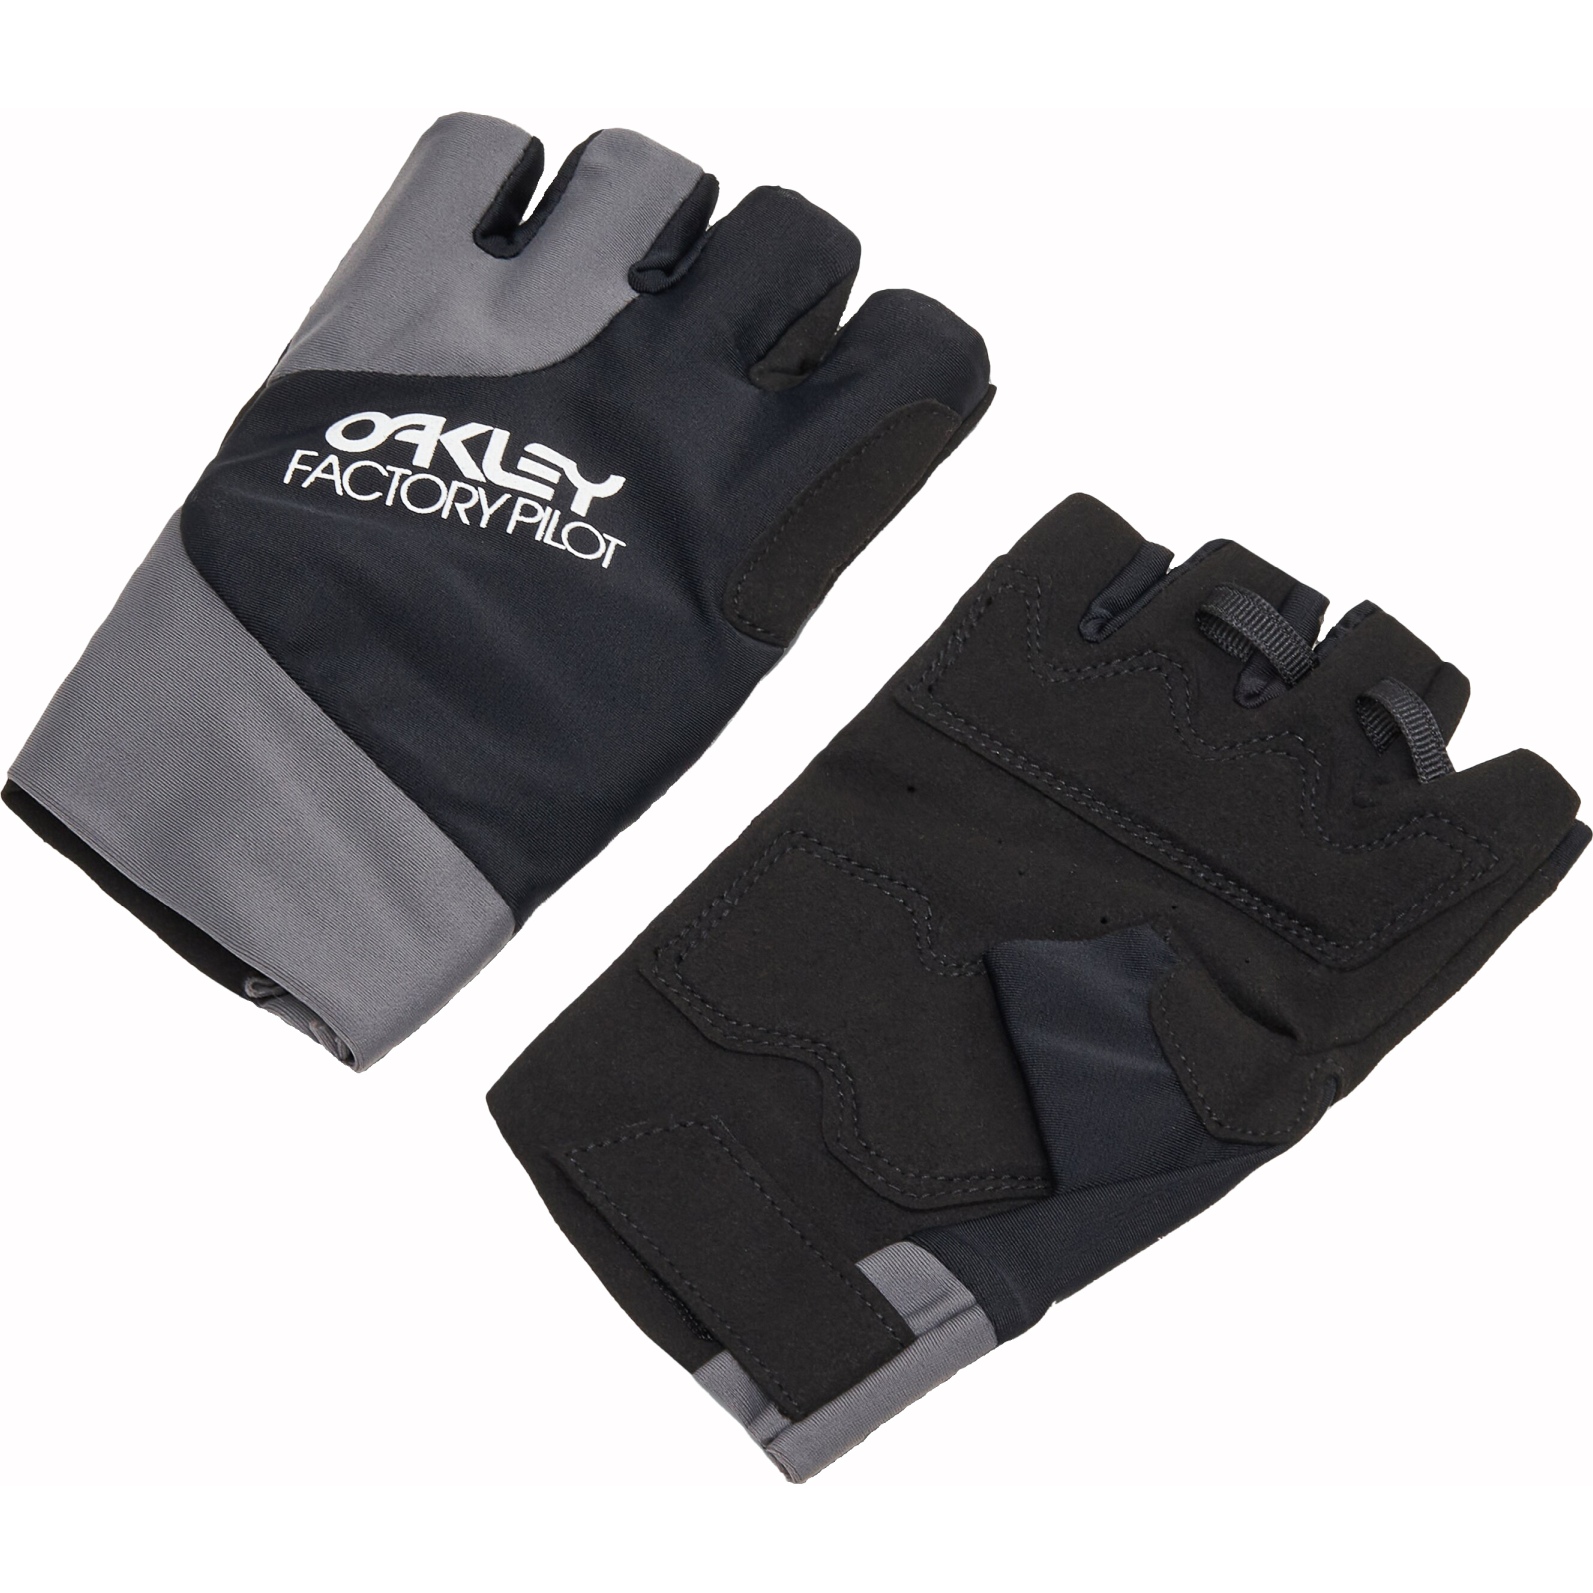 Productfoto van Oakley Factory Pilot MTB Handschoenen met Korte Vingers Dames - Blackout